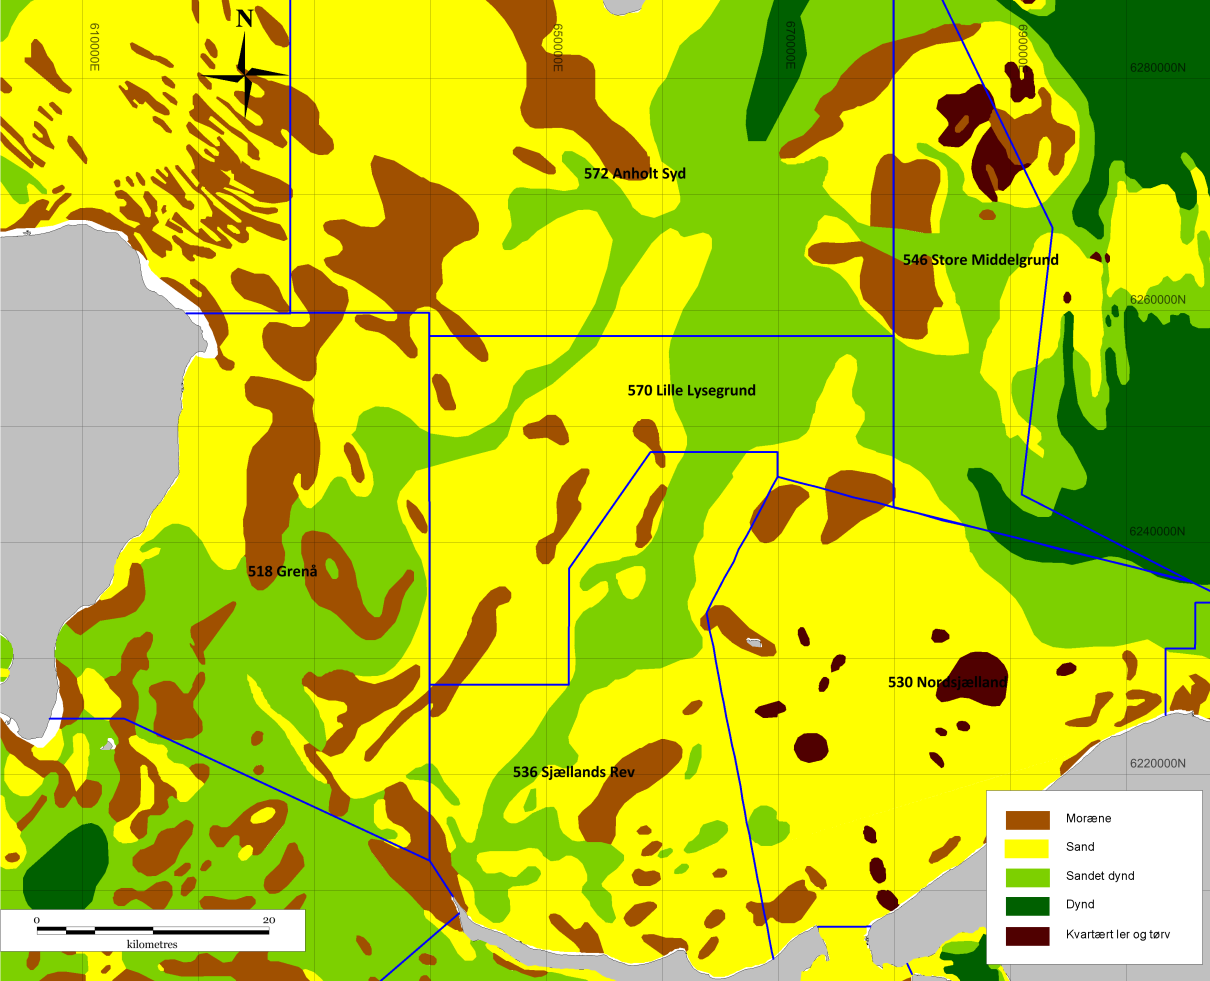 Som det fremgår af havbundssedimentkortet (figur 9.3) dominerer sandet dynd havbunden i de dybereliggende områder. Det omfatter bl.a. den sydlige del af Grenå projektområdet området samt de dybereliggende områder mod nordøst.